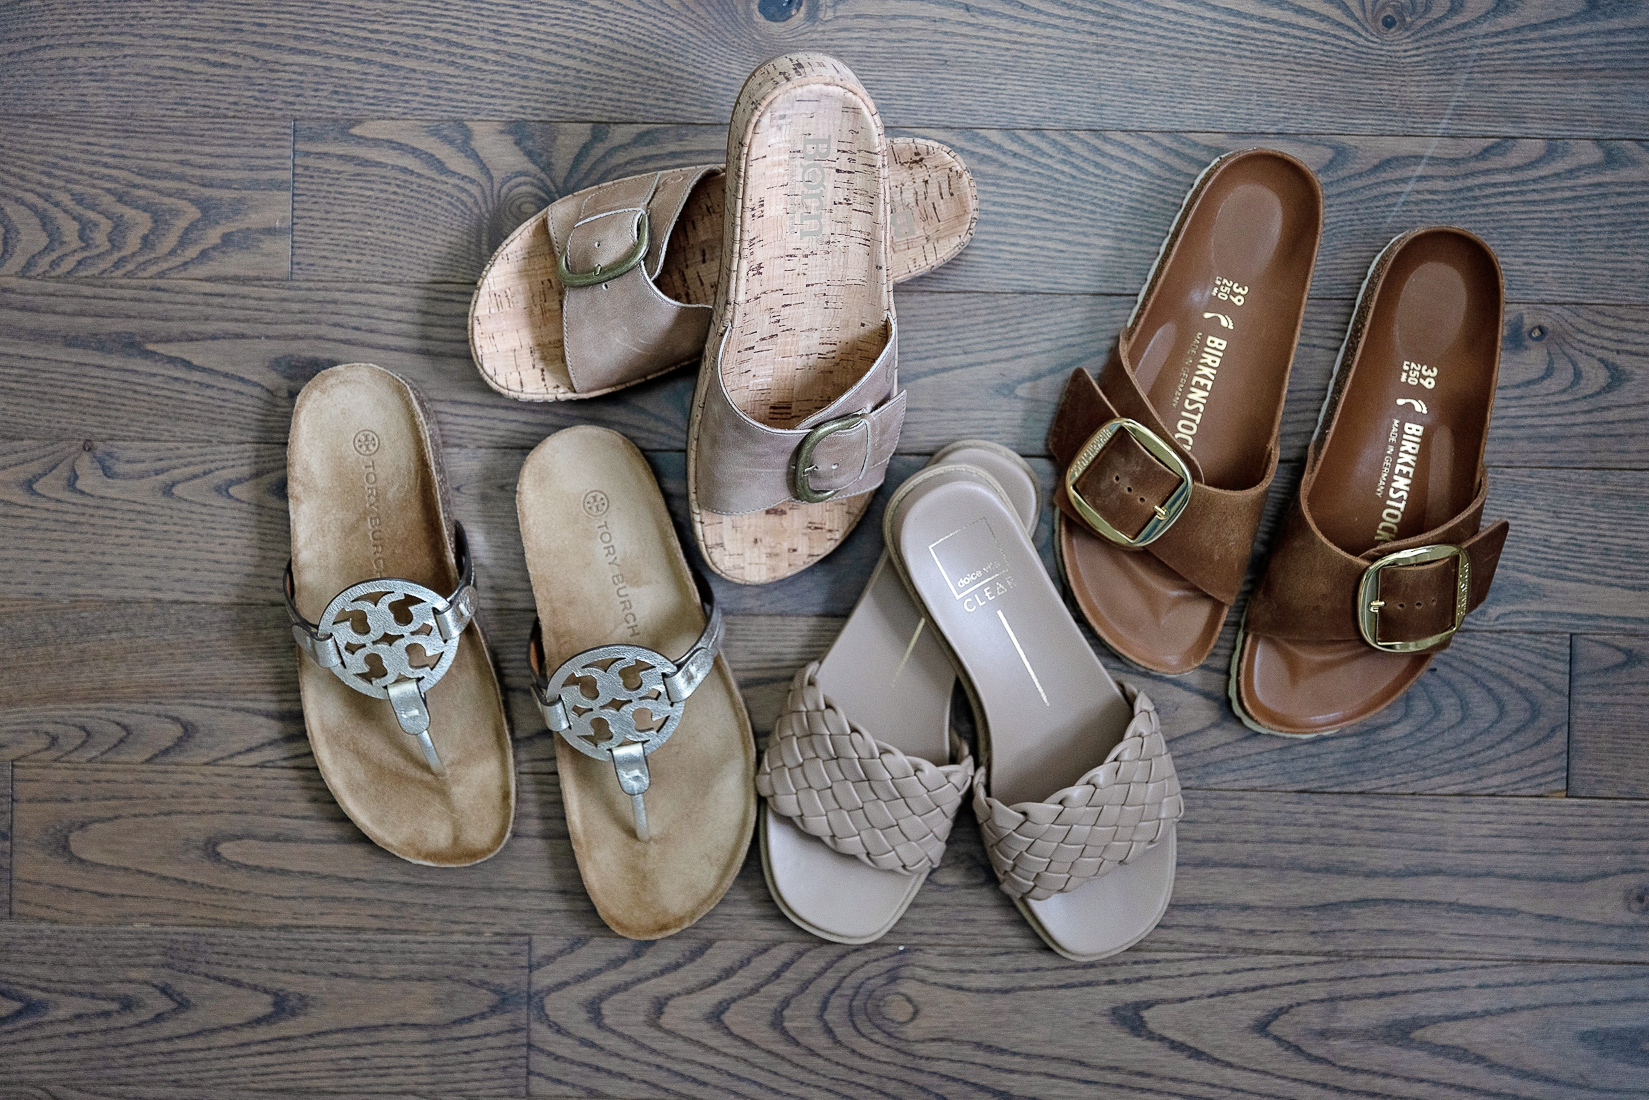 The Best Comfort Sandals That Aren't Frumpy